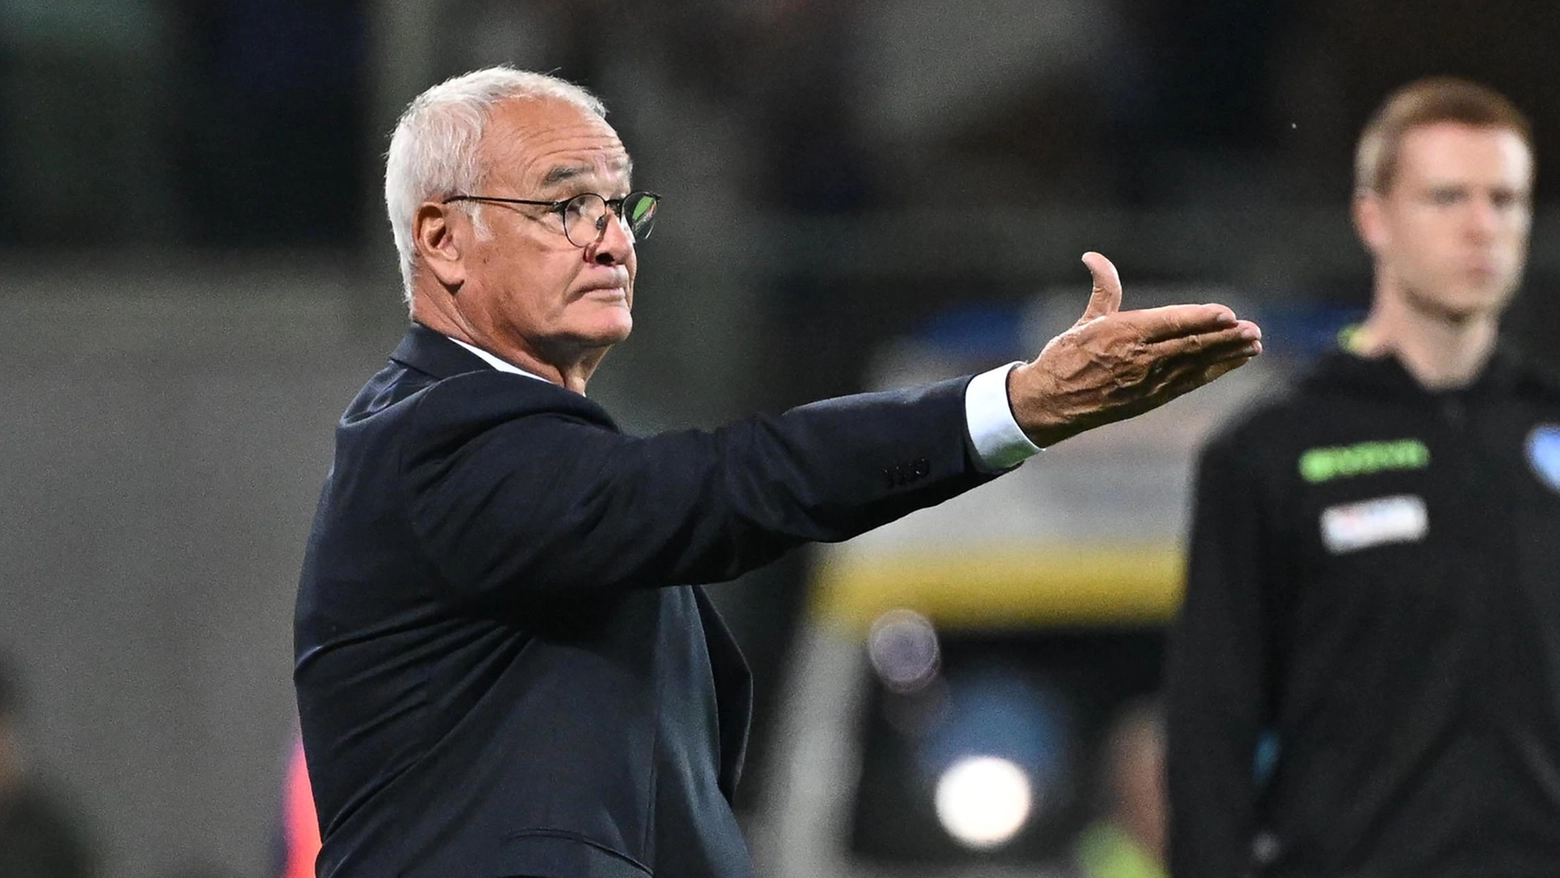 Ranieri affronta il suo passato a caccia della prima vittoria stagionale, Mourinho a caccia di continuità